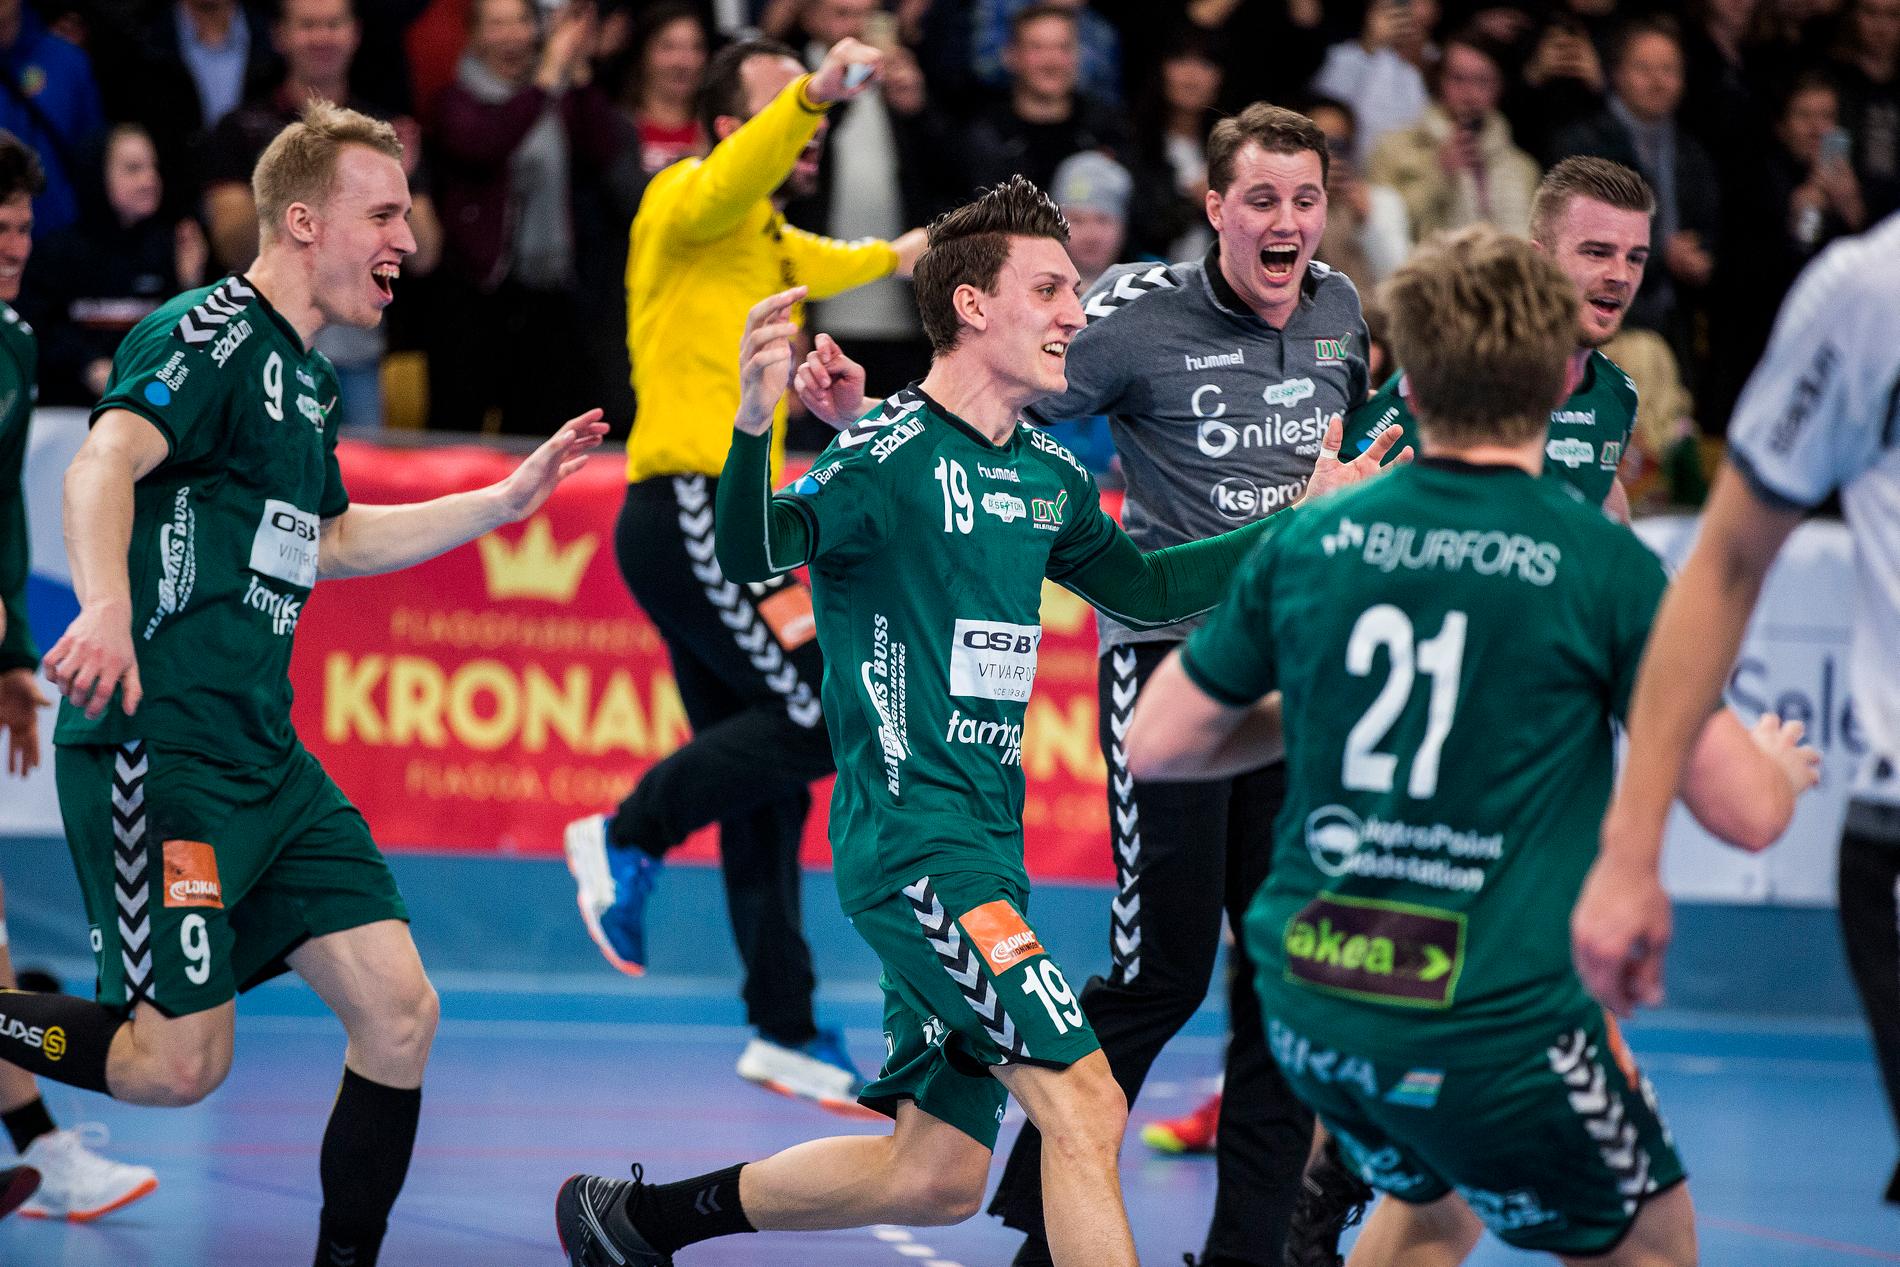 OV Helsingborg är tillbaka i den högsta serien och staden kan framöver bli ett handbollsnäste igen. I kväll väntar premiär mot Lugi på hemmaplan.